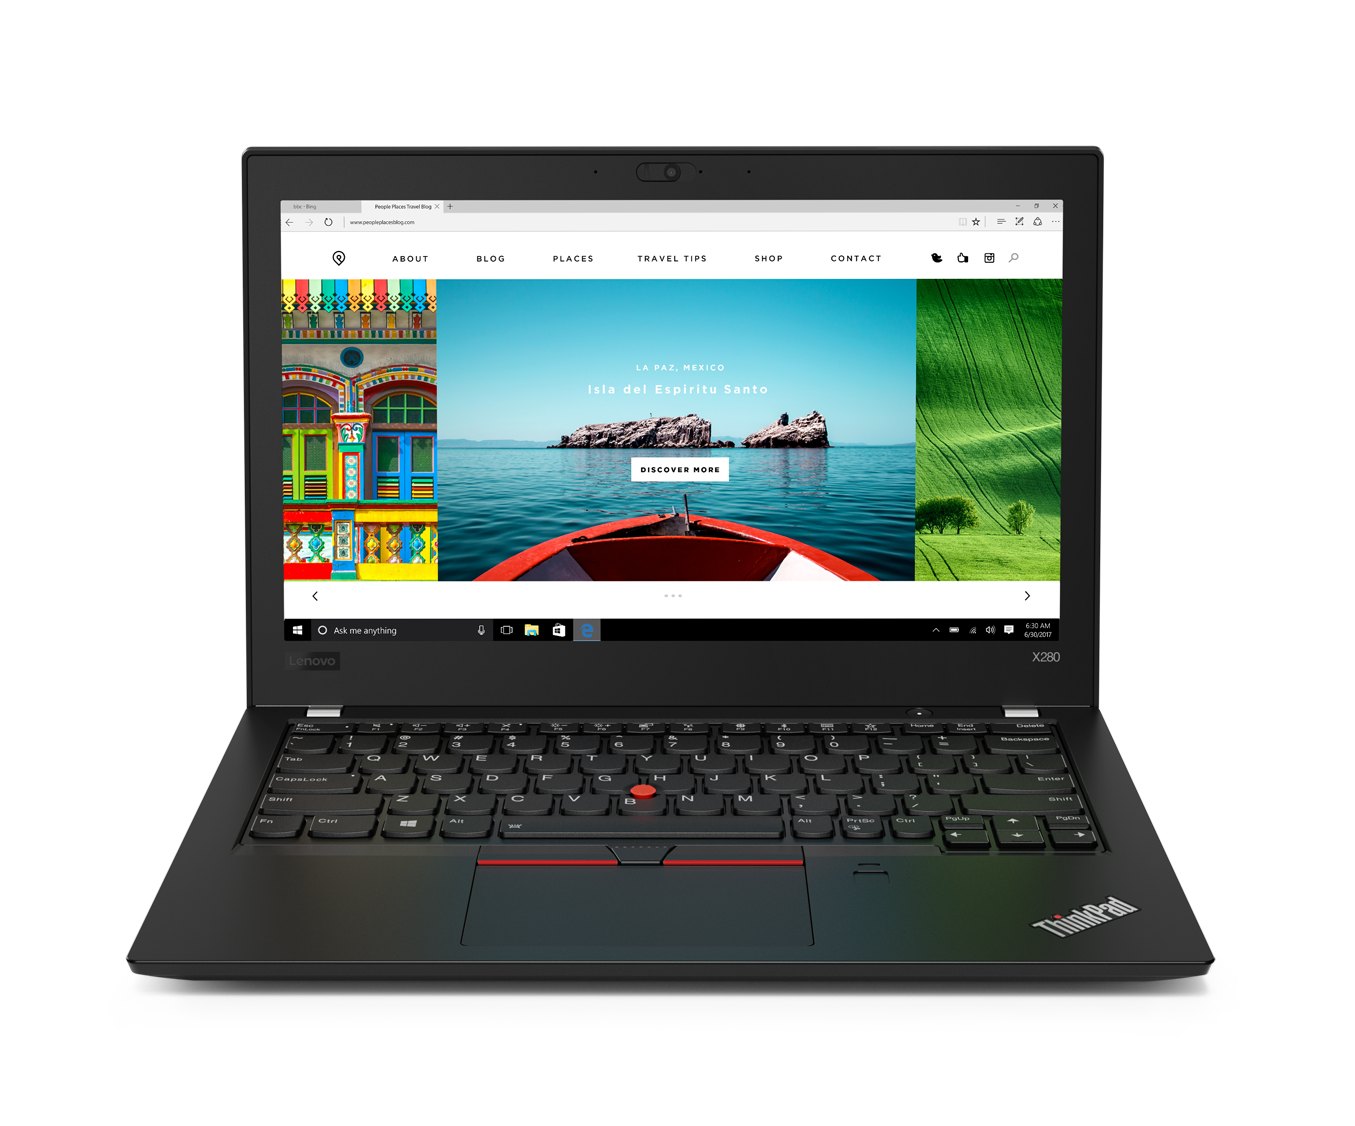 Kết quả hình ảnh cho Lenovo ThinkPad Yoga X380